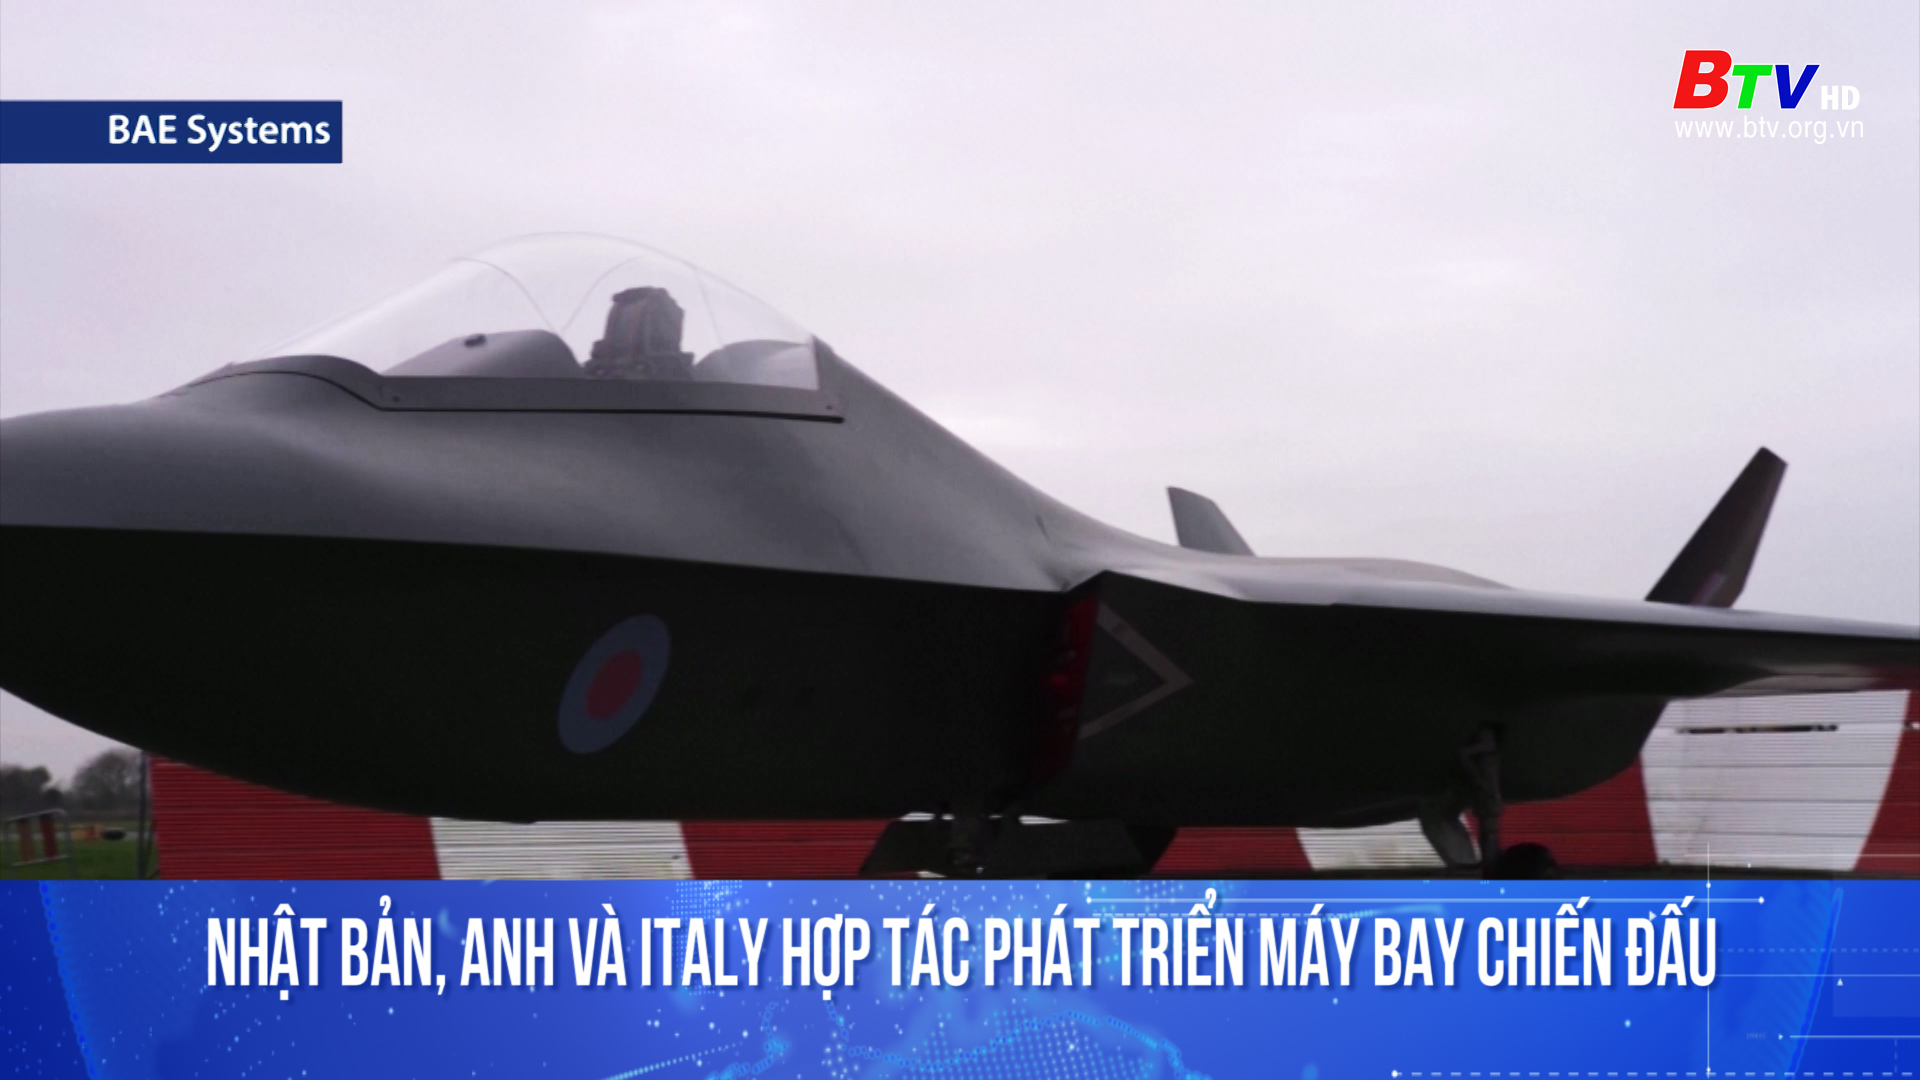 Nhật Bản, Anh và Italy hợp tác phát triển máy bay chiến đấu 